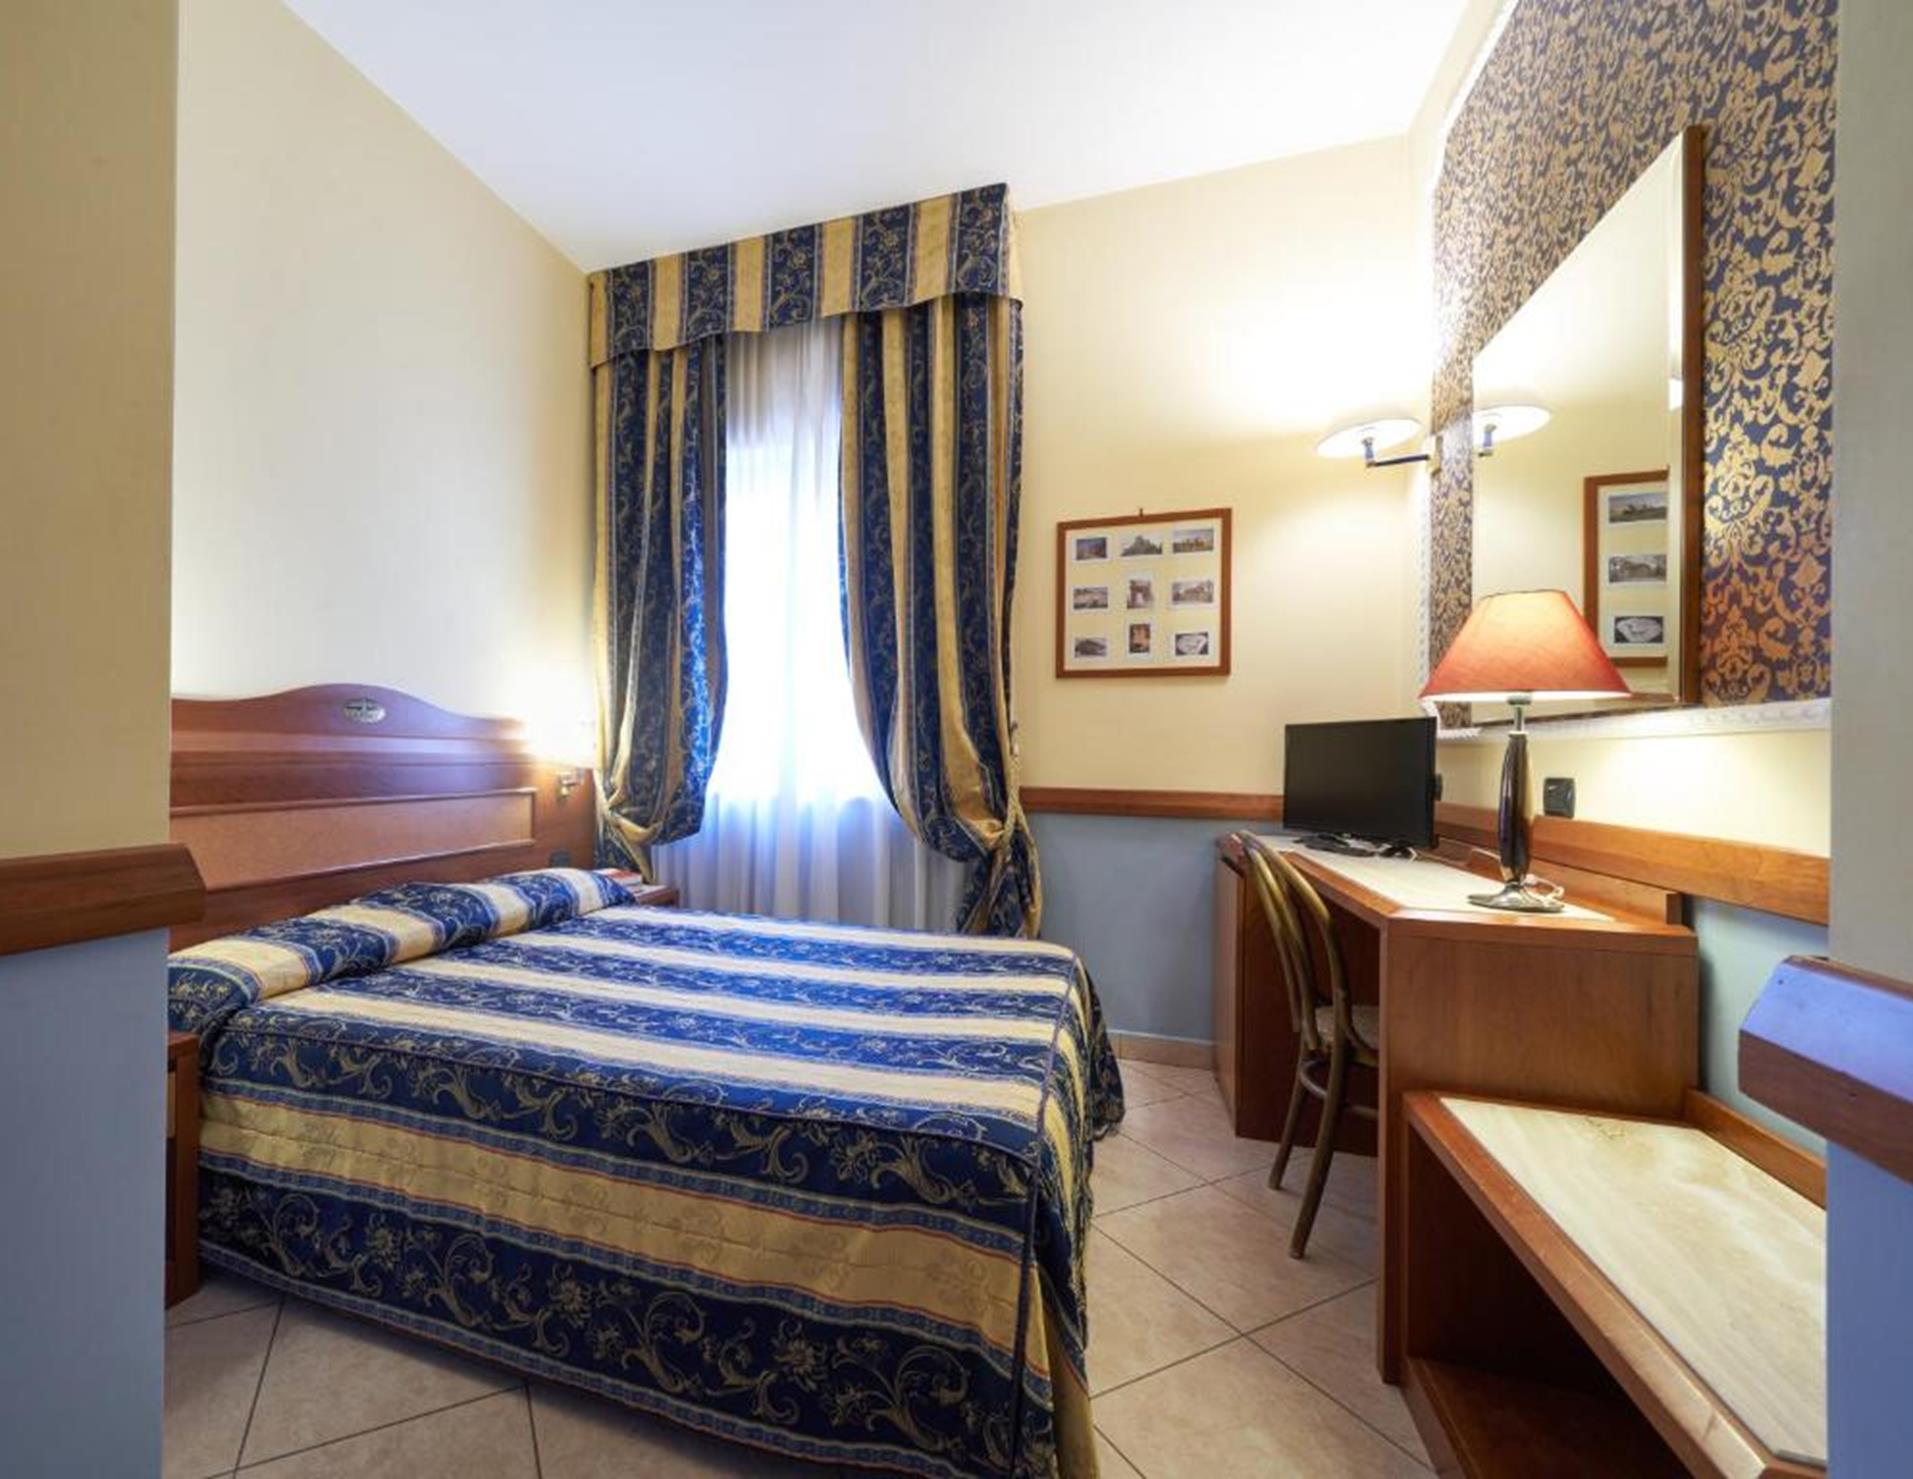 Hotel Ristorante La Piana - Room 4